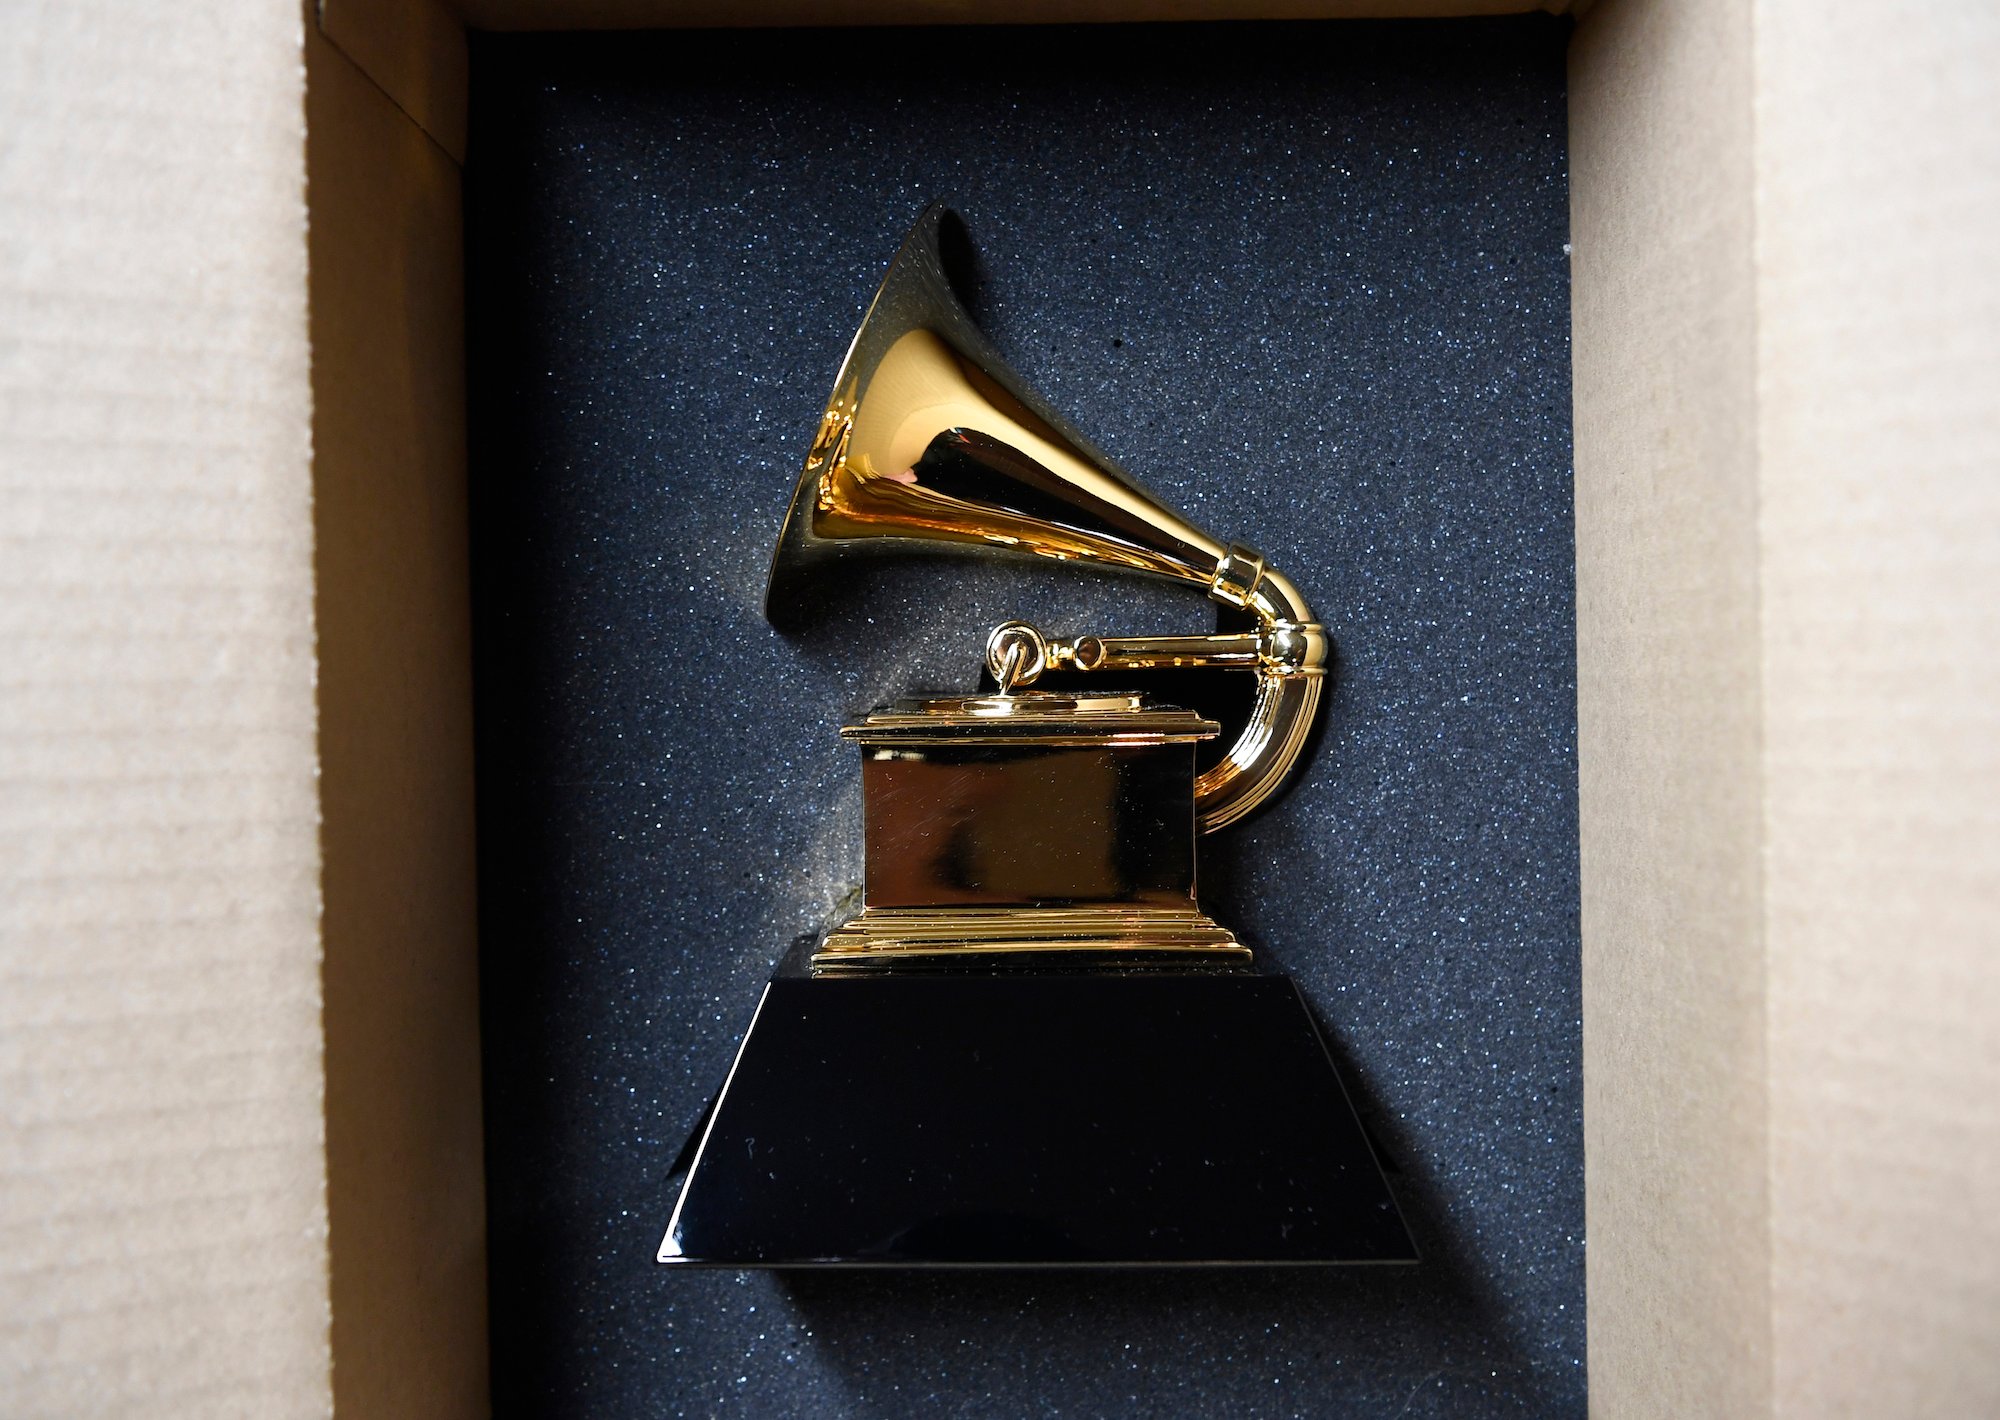 Grammy Awards trophy